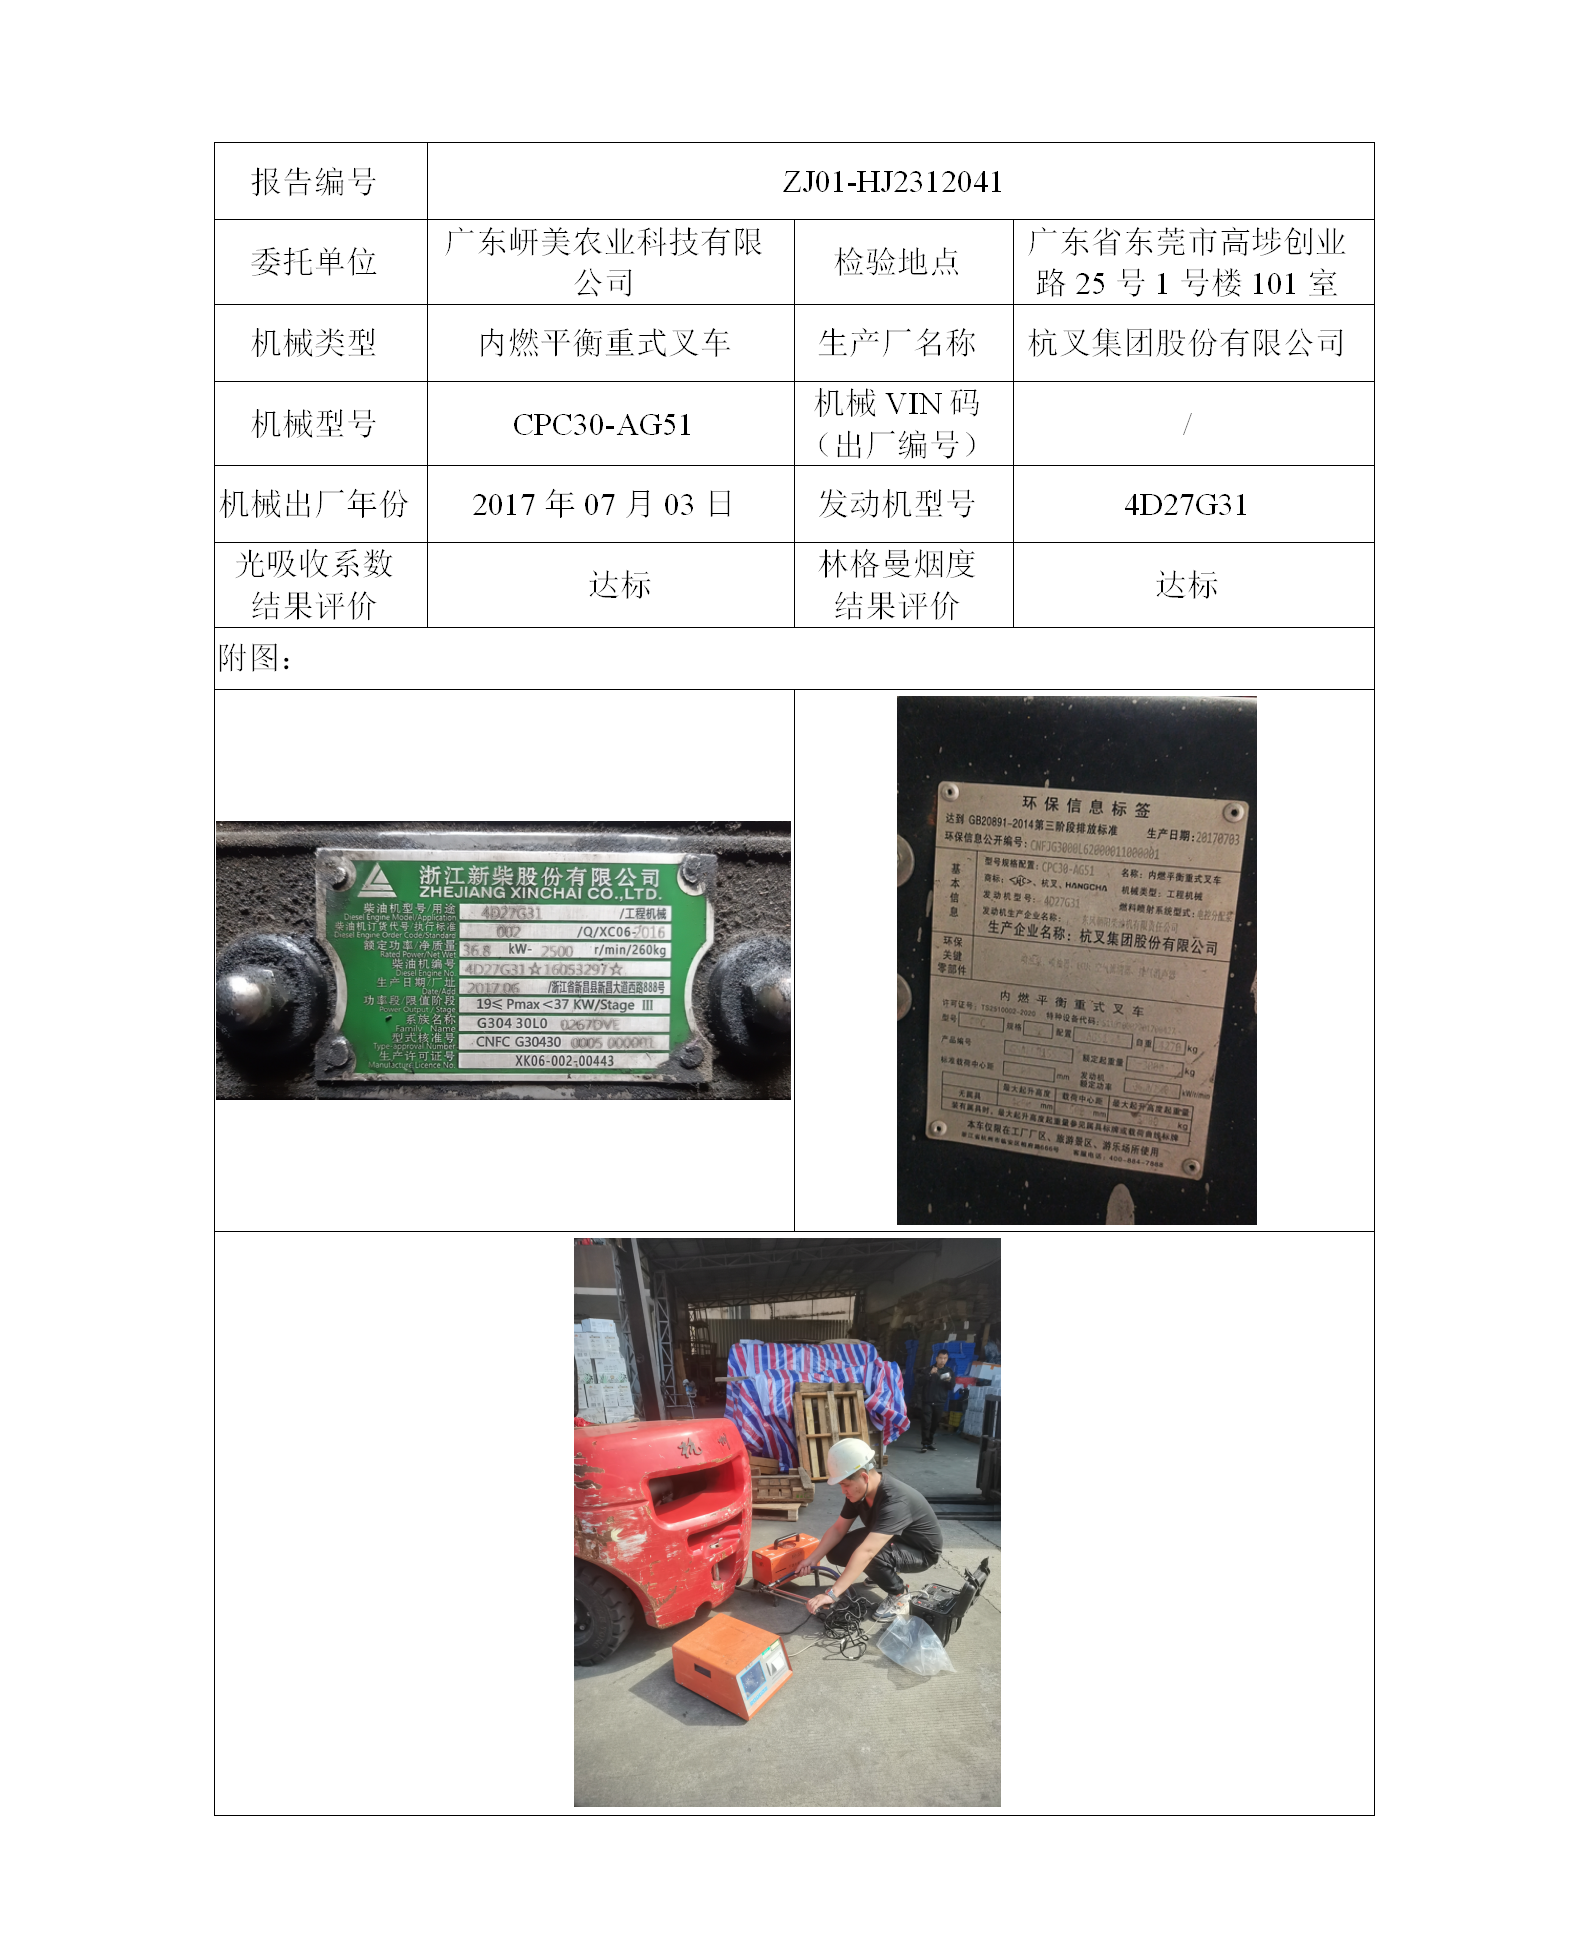 委托-ZJ01-HJ2312041广东岍美农业科技有限公司二维码-张伟仪_01.png